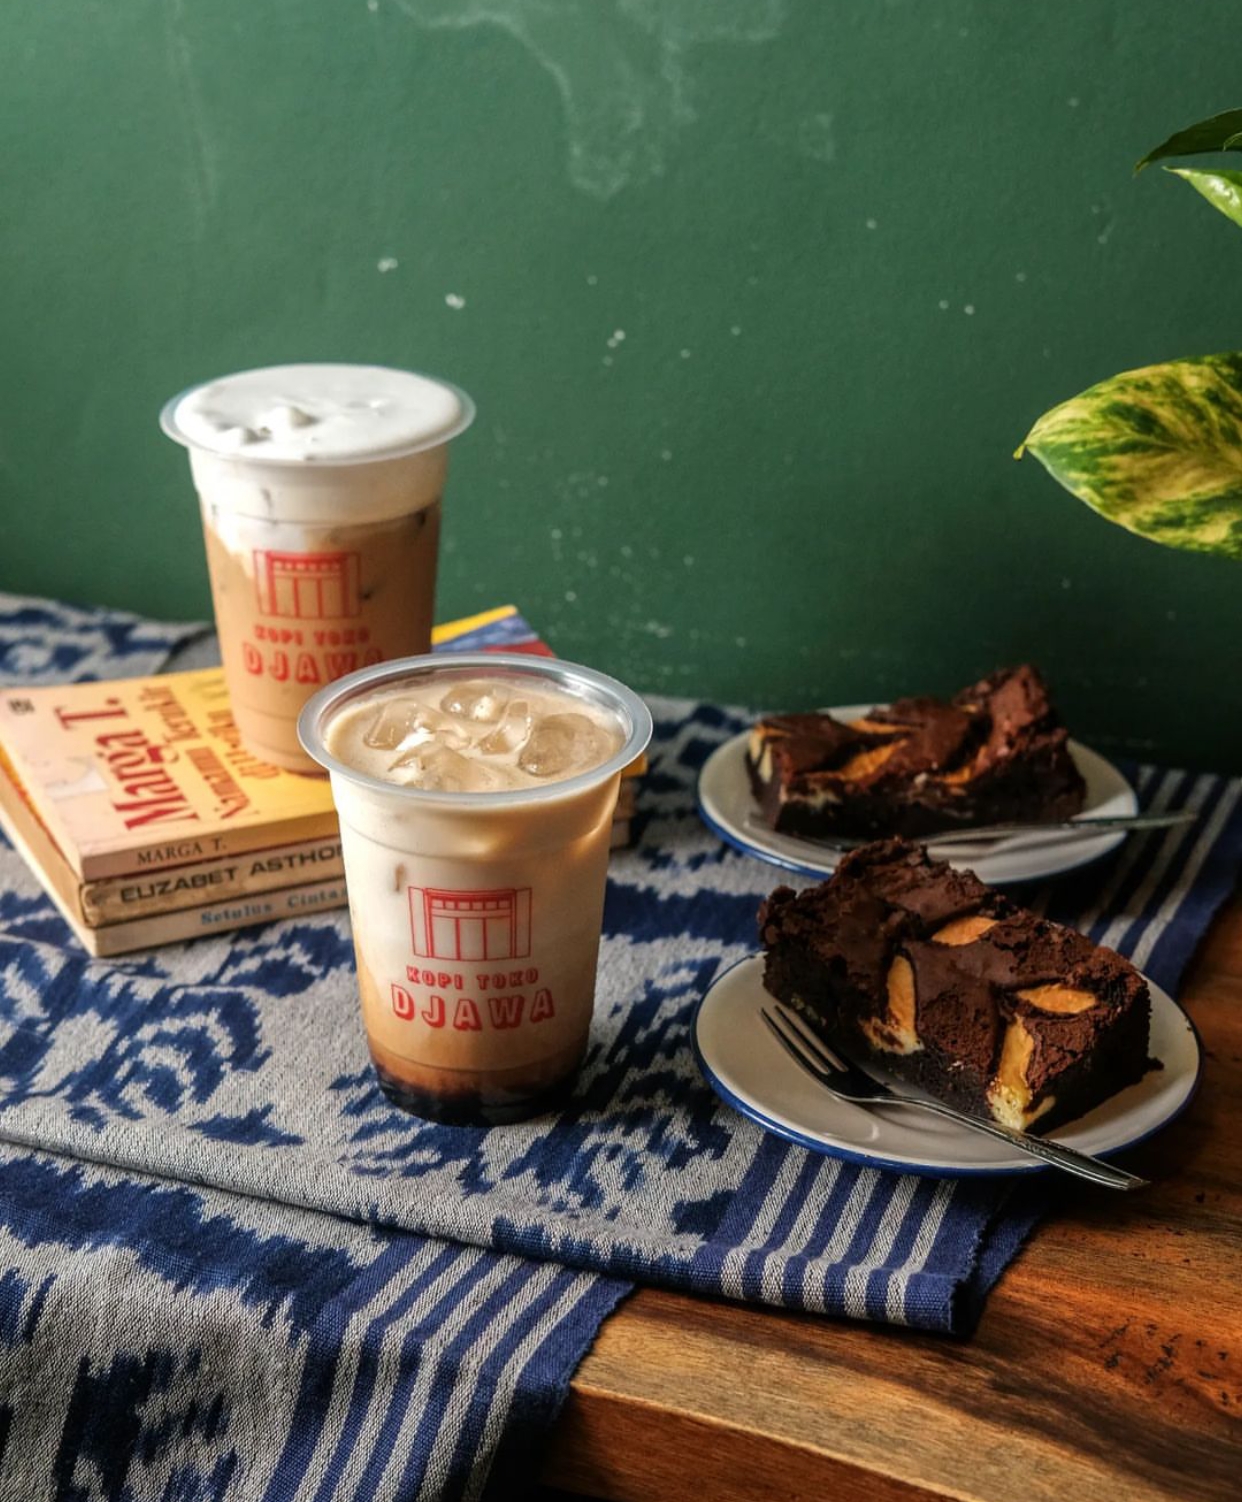 Rekomendasi Cafe Dengan Kopi Susu Enak di Bandung (sumber: akun Instagram @kopitokodjawa)